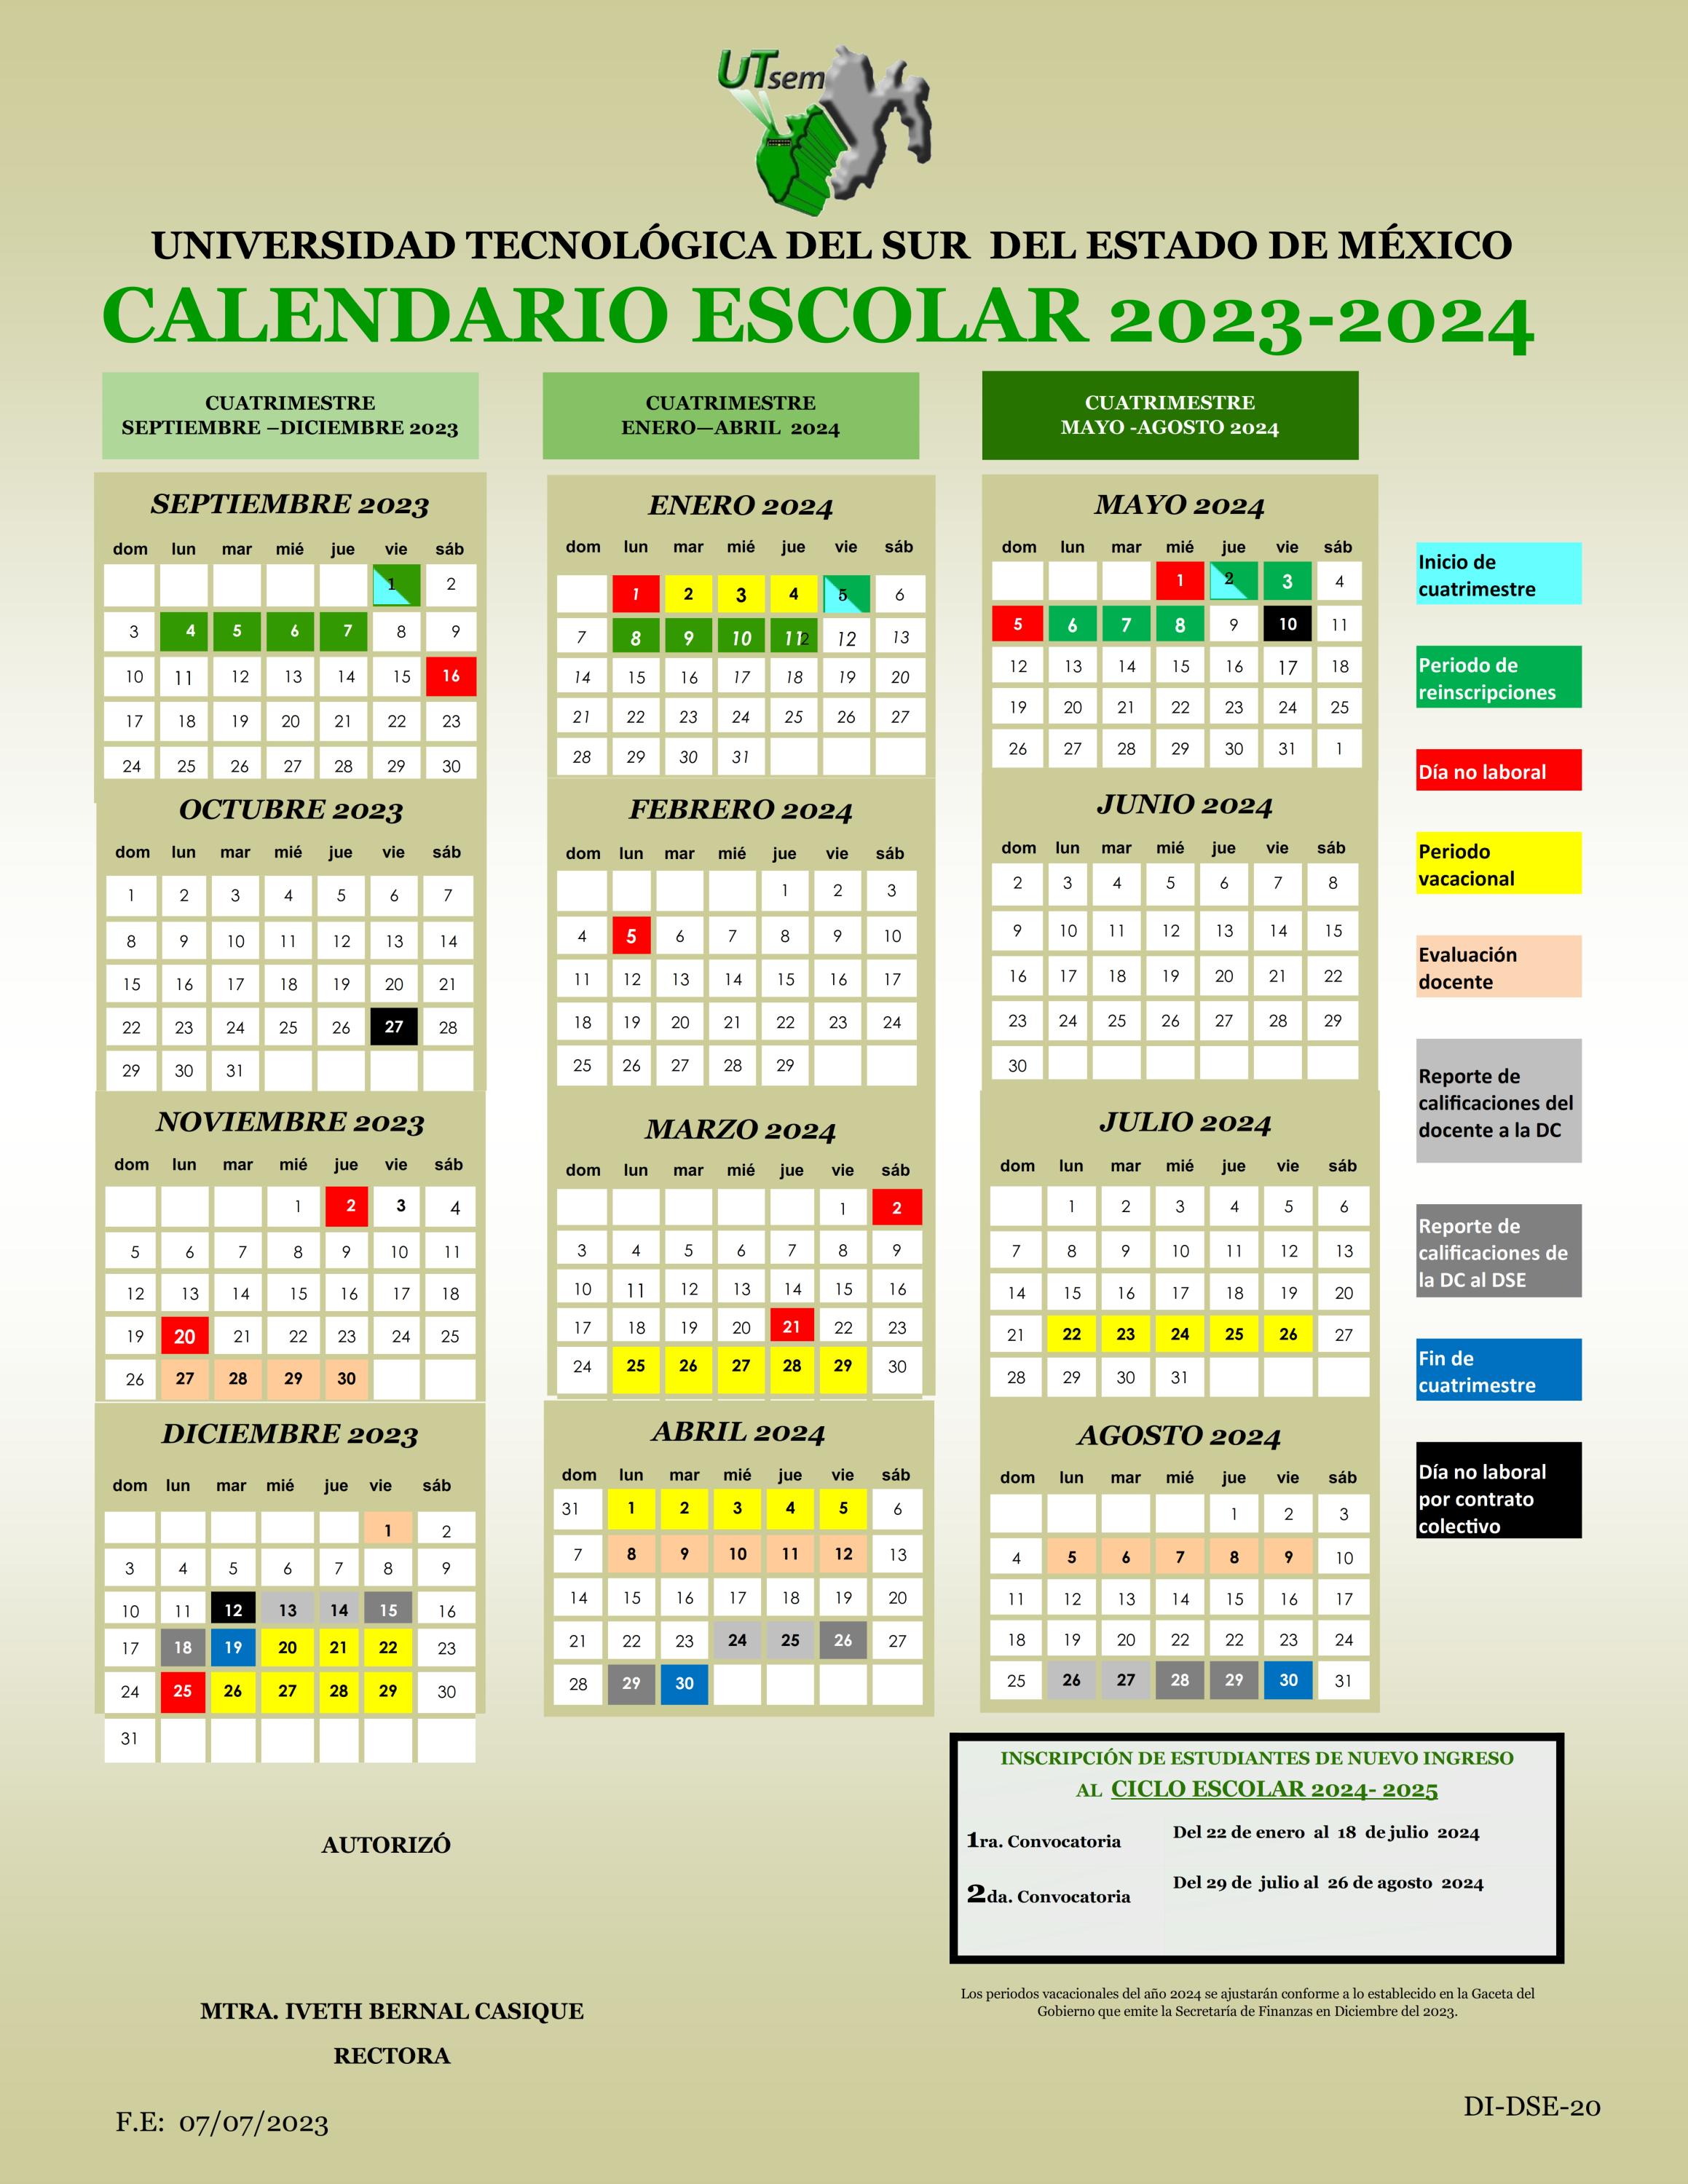 Calendario escolar Universidad Tecnológica del Sur del Estado de México